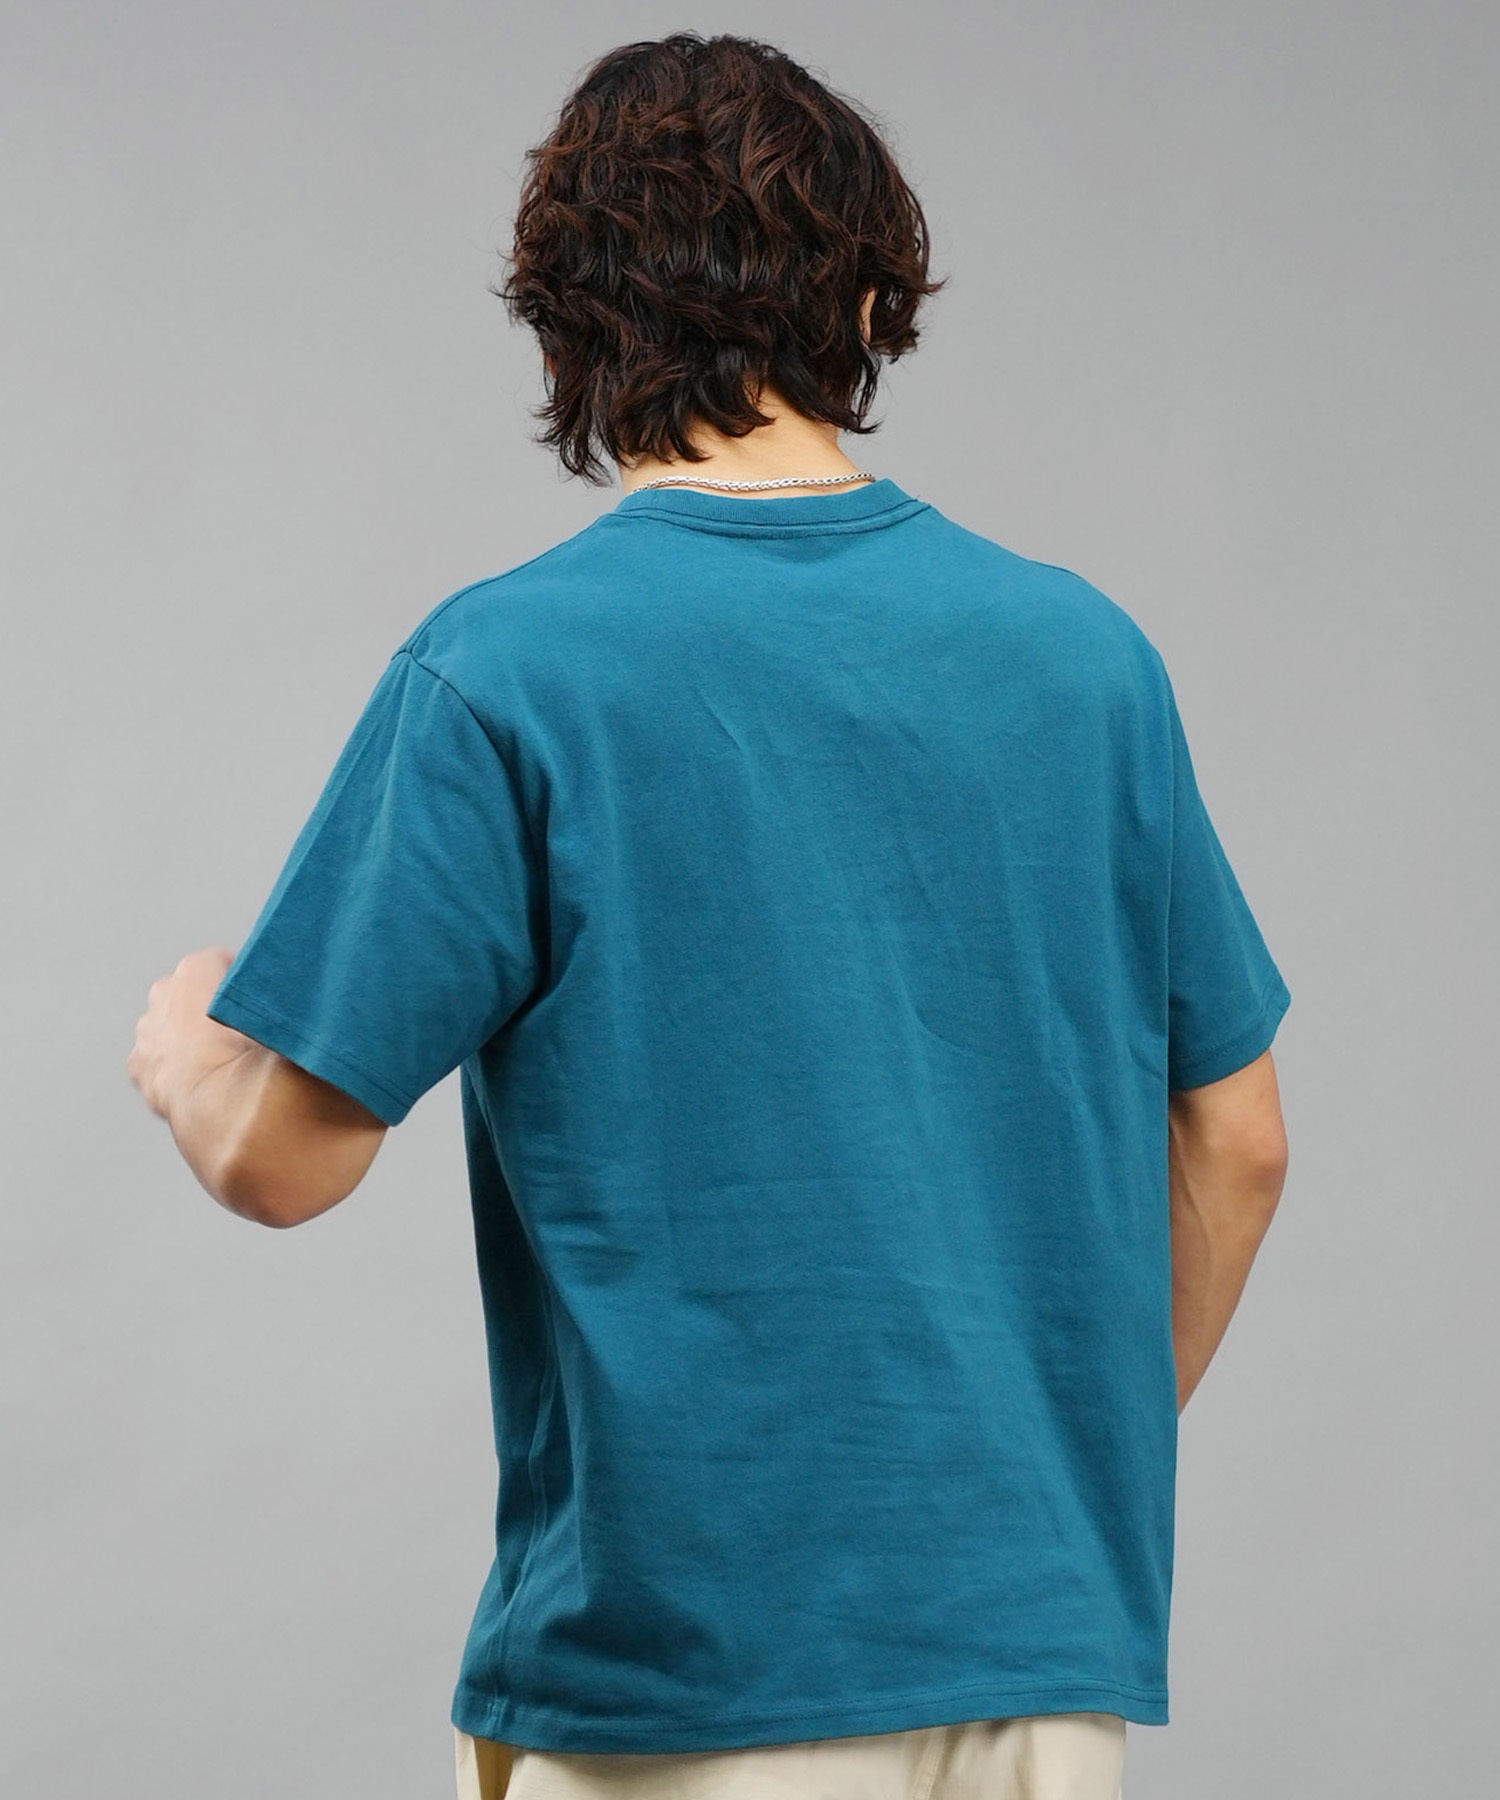 【マトメガイ対象】CHUMS チャムス メンズ Tシャツ 半袖 ブービーバード ピクニックモチーフ フロントプリント クルーネック CH01-2347(G057-M)